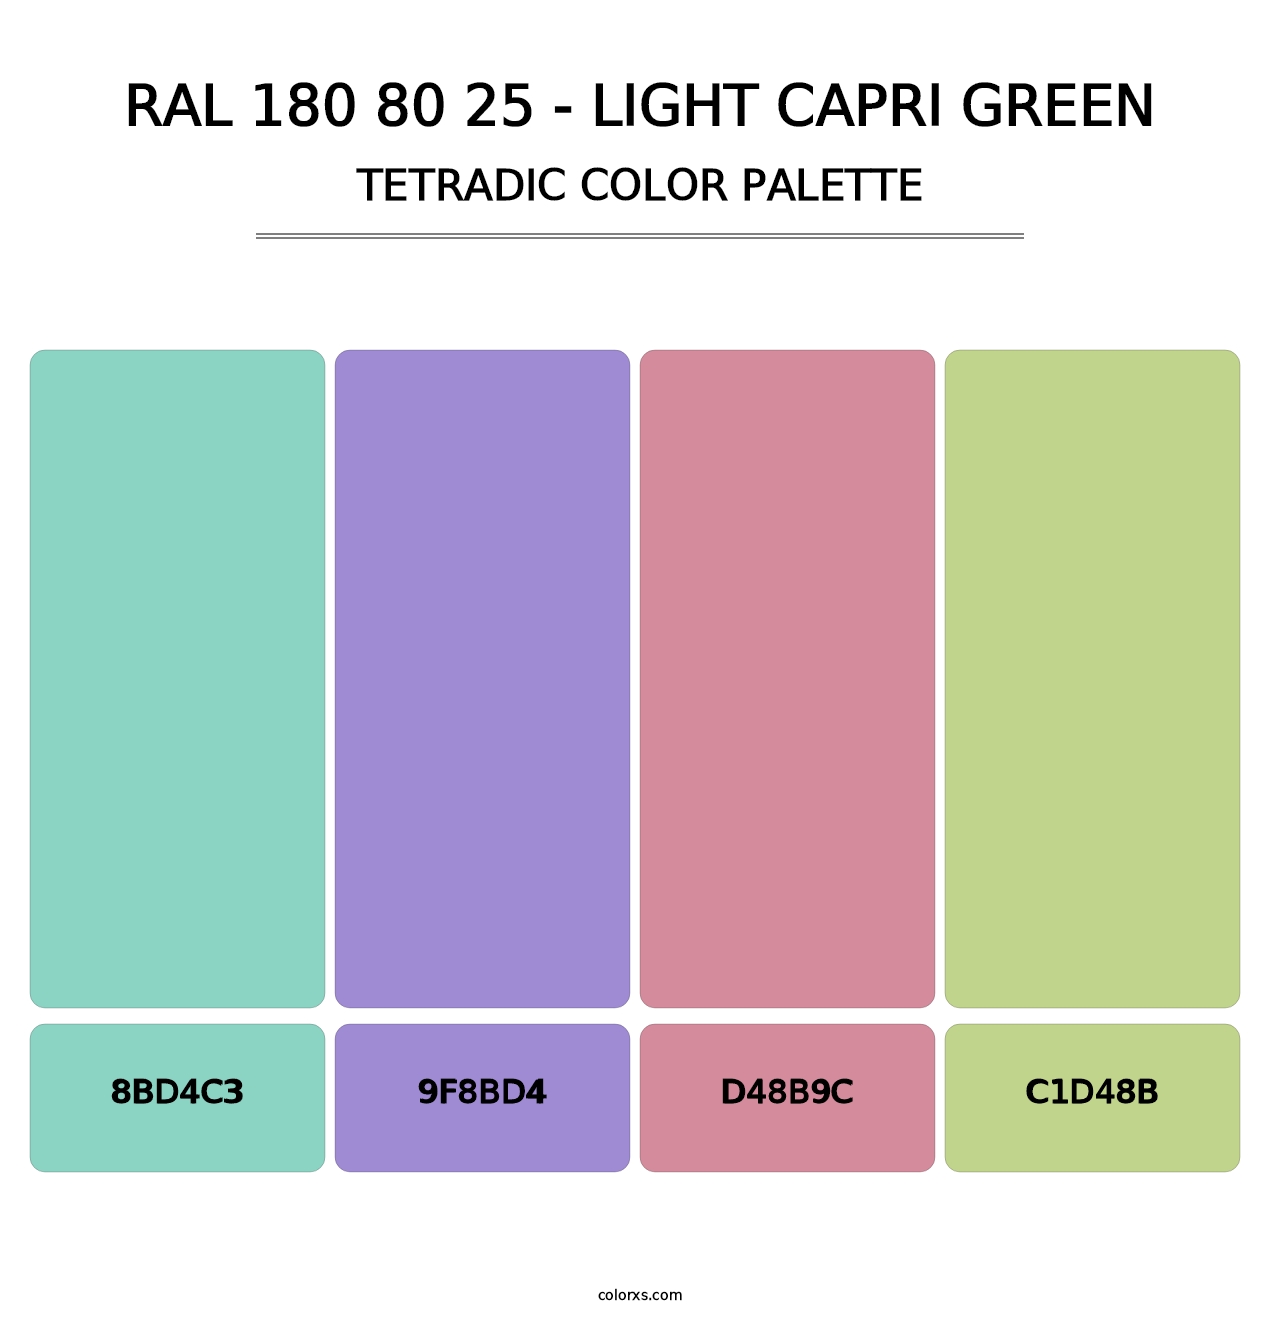 RAL 180 80 25 - Light Capri Green - Tetradic Color Palette